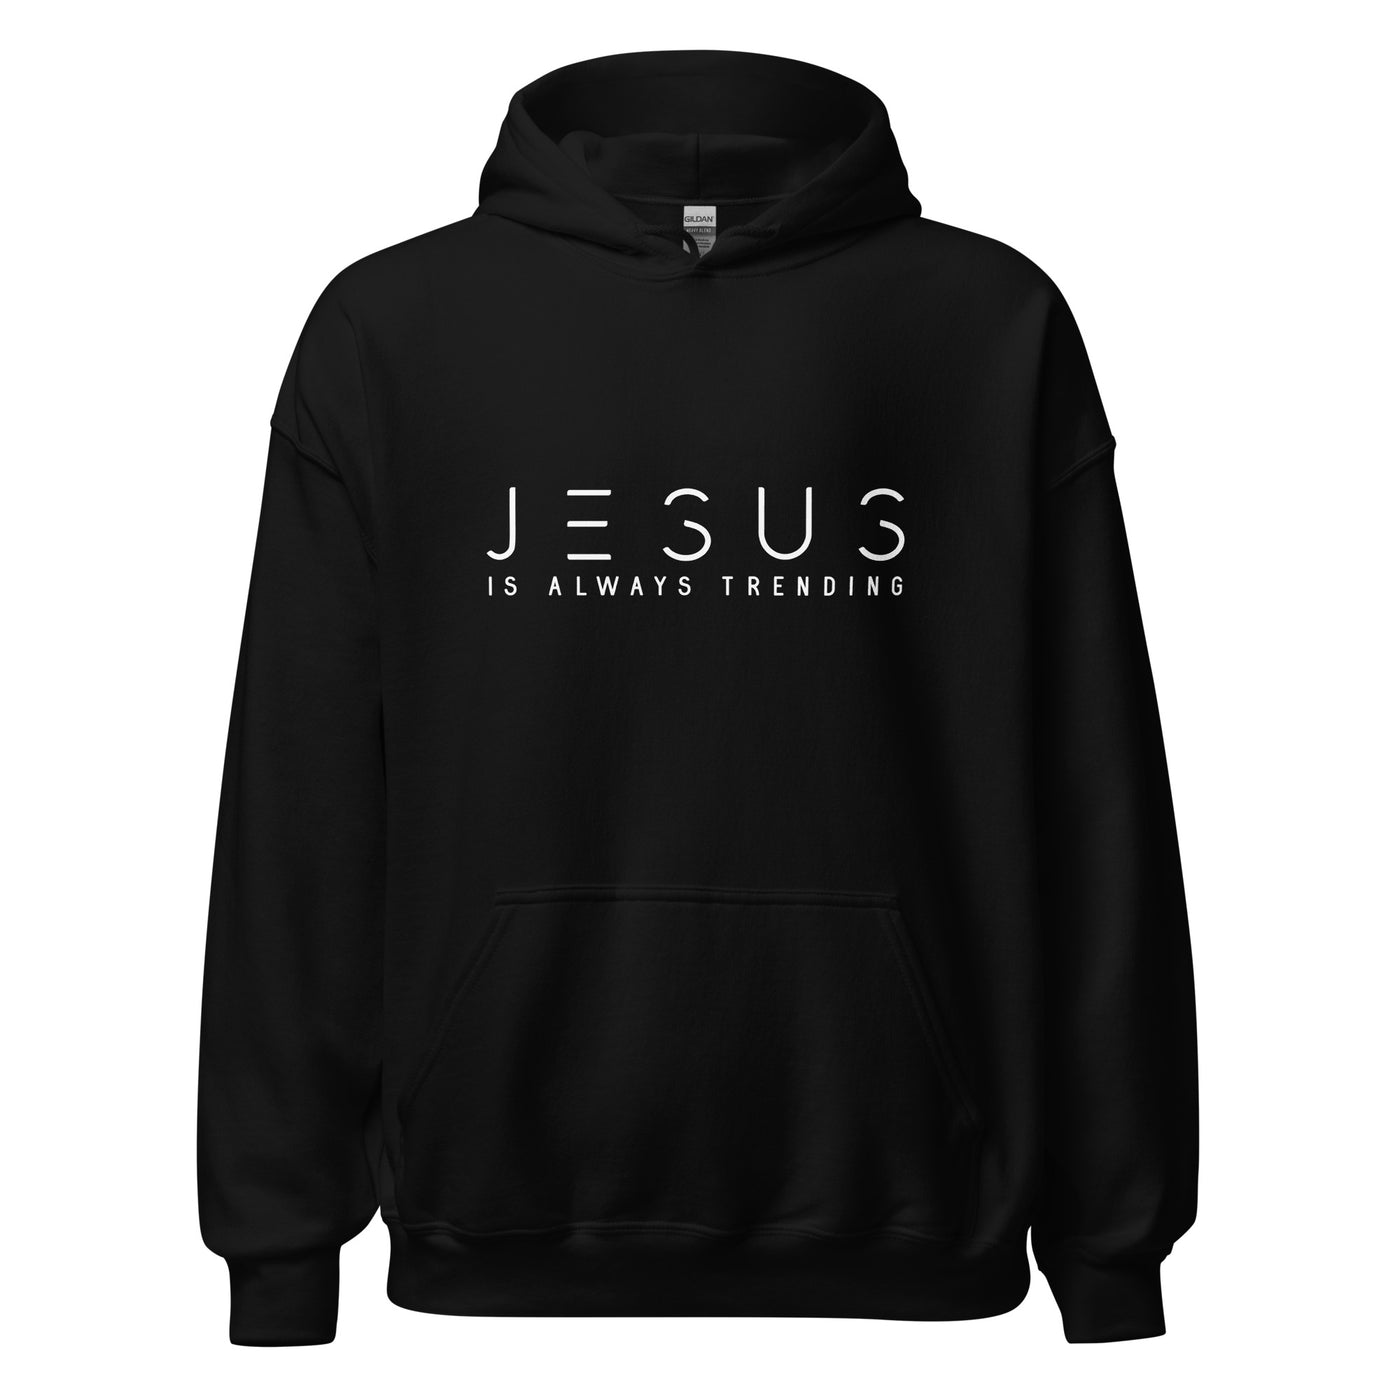 Black Hoodie - "Jesus Is Always Trending" displayed in white.